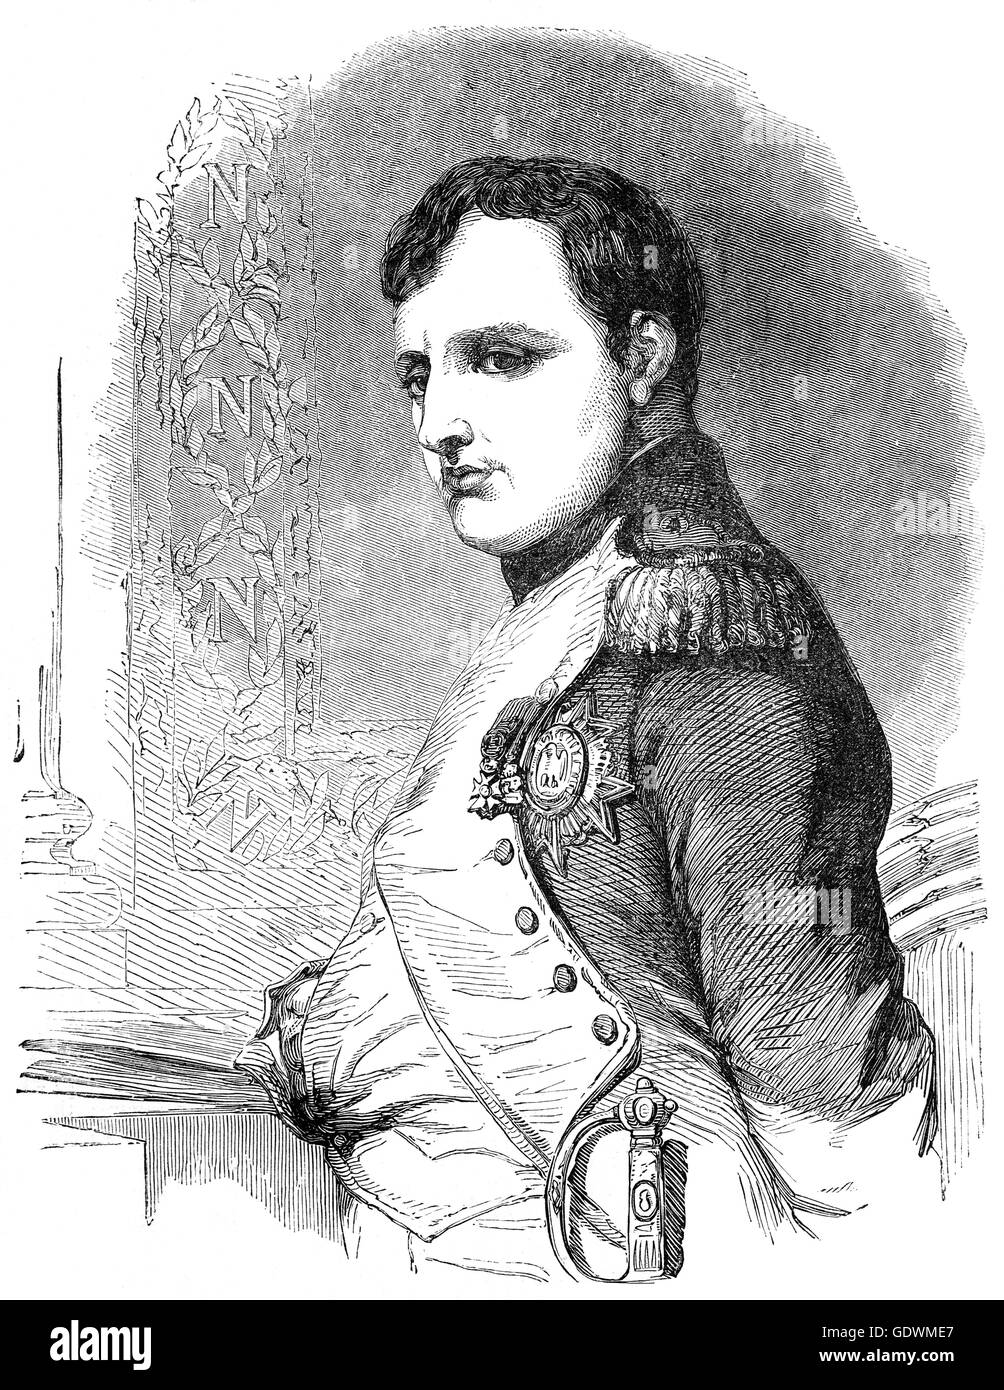 Napoléon Bonaparte(1769 – 1821) war ein französischer militärischer und politischer Führer, stieg zum Vorsprung während der französischen Revolution und führte mehrere erfolgreiche Kampagnen während der Revolutionskriege. Als Napoleon i., er war Kaiser der Franzosen von 1804 bis 1814 und 1815. Stockfoto